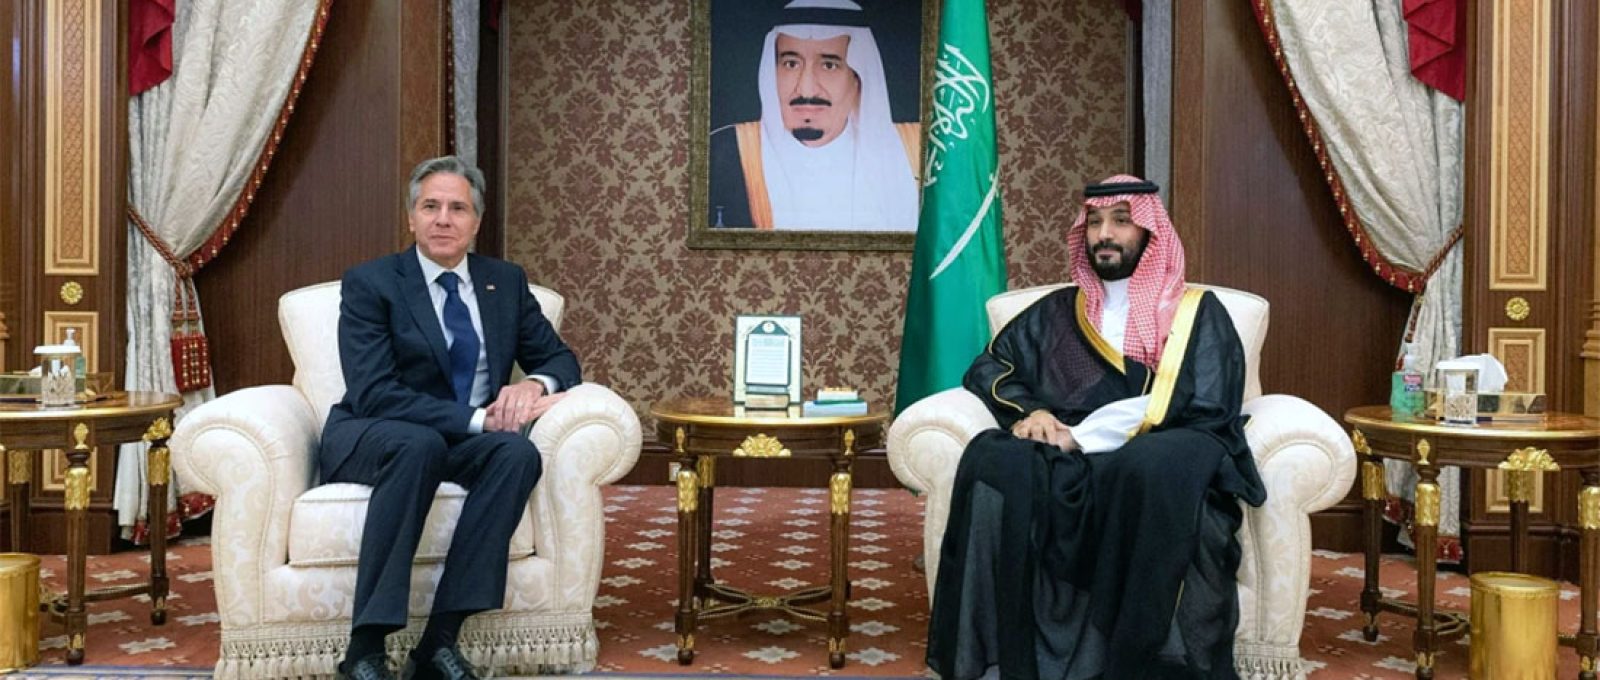 O secretário de Estado americano, Antony Blinken, encontra-se com o príncipe herdeiro saudita, Mohammed bin Salman, em Jeddah, Arábia Saudita (Bandar Al-Jaloud/Palácio Real Saudita via AFP).